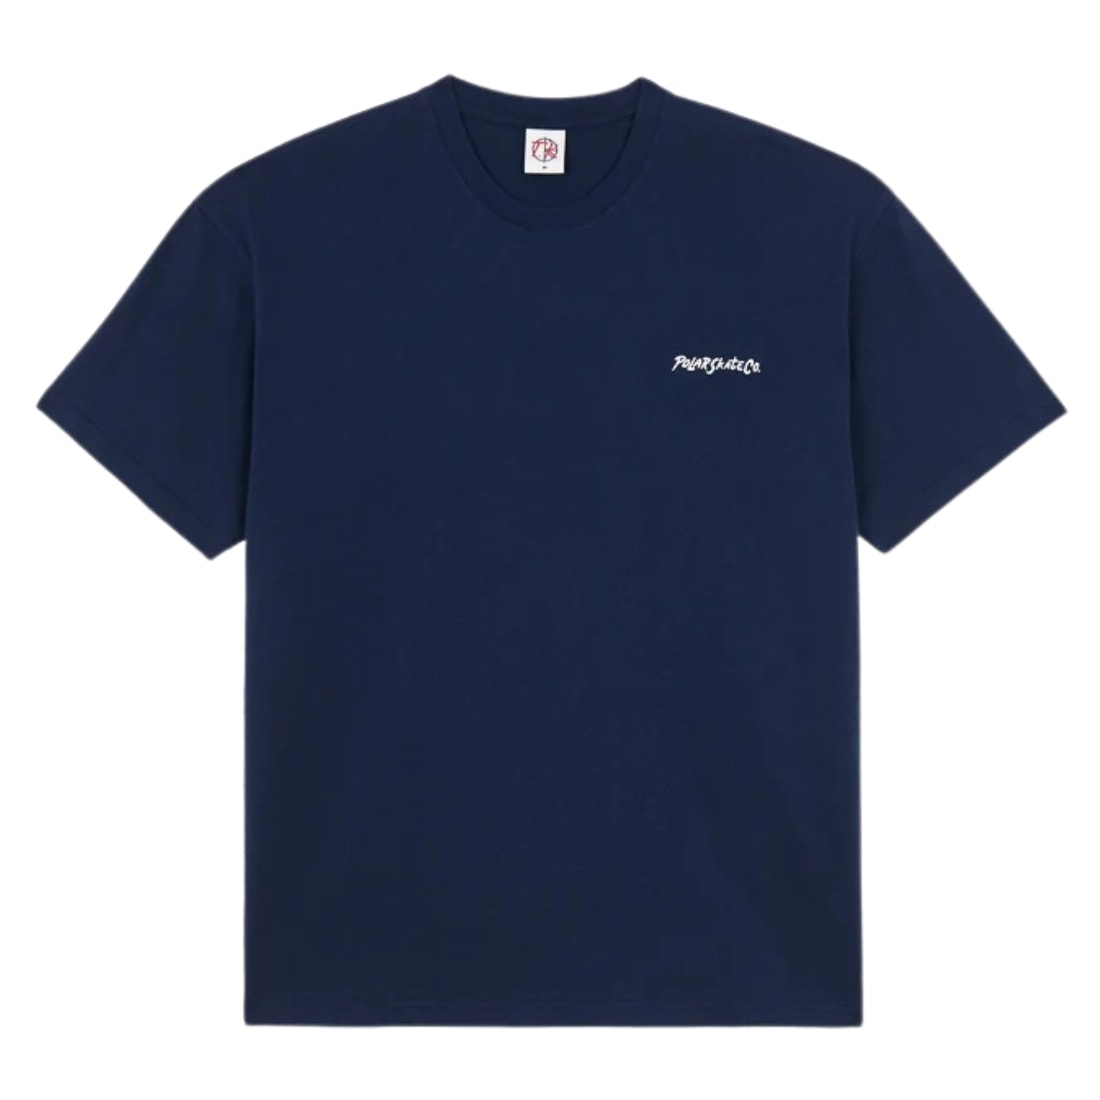 Polar 12 Faces T-Shirt - Dark Blue - Mens Graphic T-Shirt by Polar